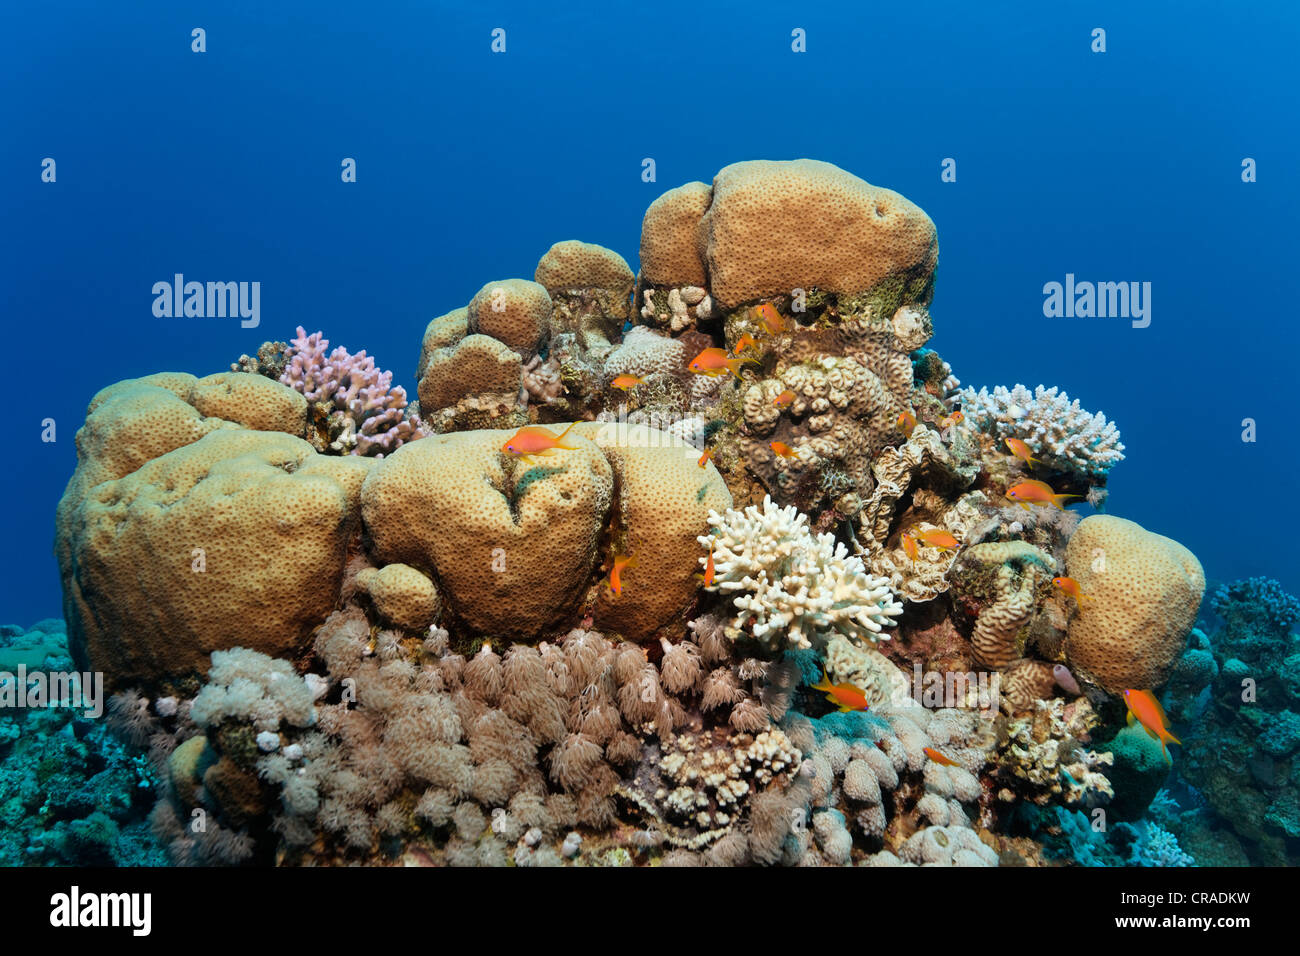 Avec plusieurs récifs coralliens et les coraux de pierre Conte Basselts (Pseudanthias sp.) Royaume hachémite de Jordanie, Mer Rouge, de l'Asie occidentale Banque D'Images